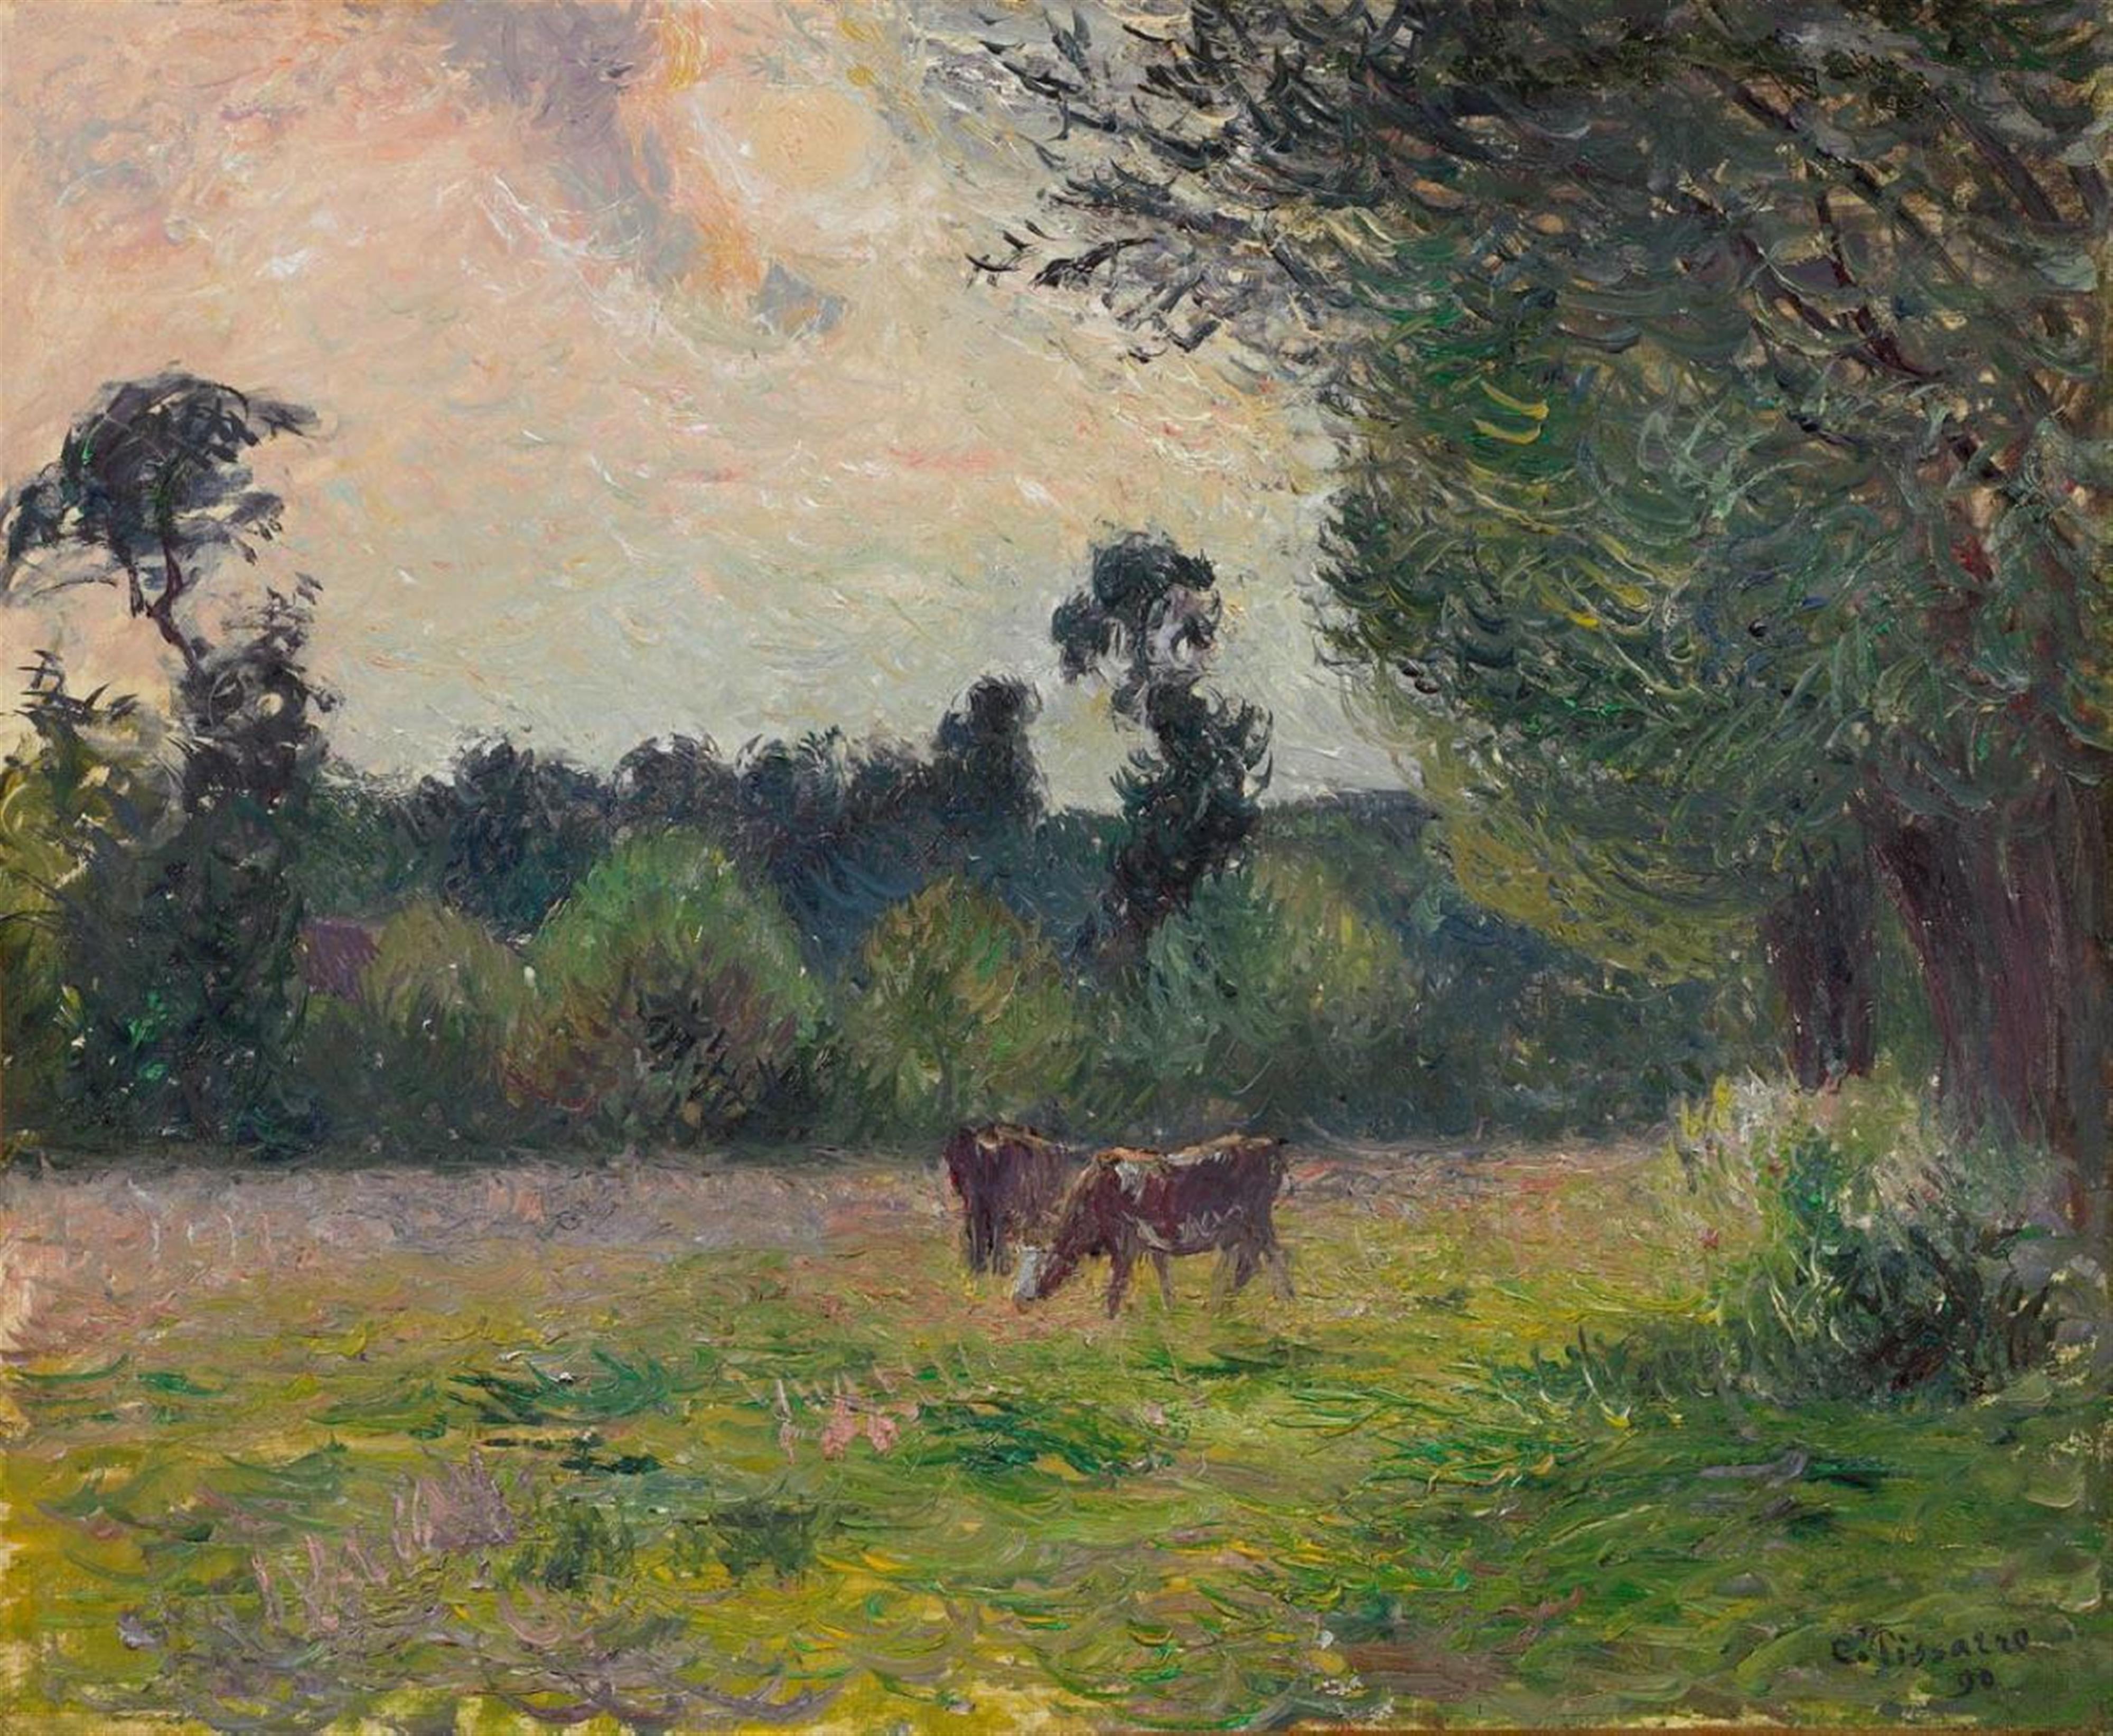 Camille Pissarro - Vaches dans un pré, soleil couchant